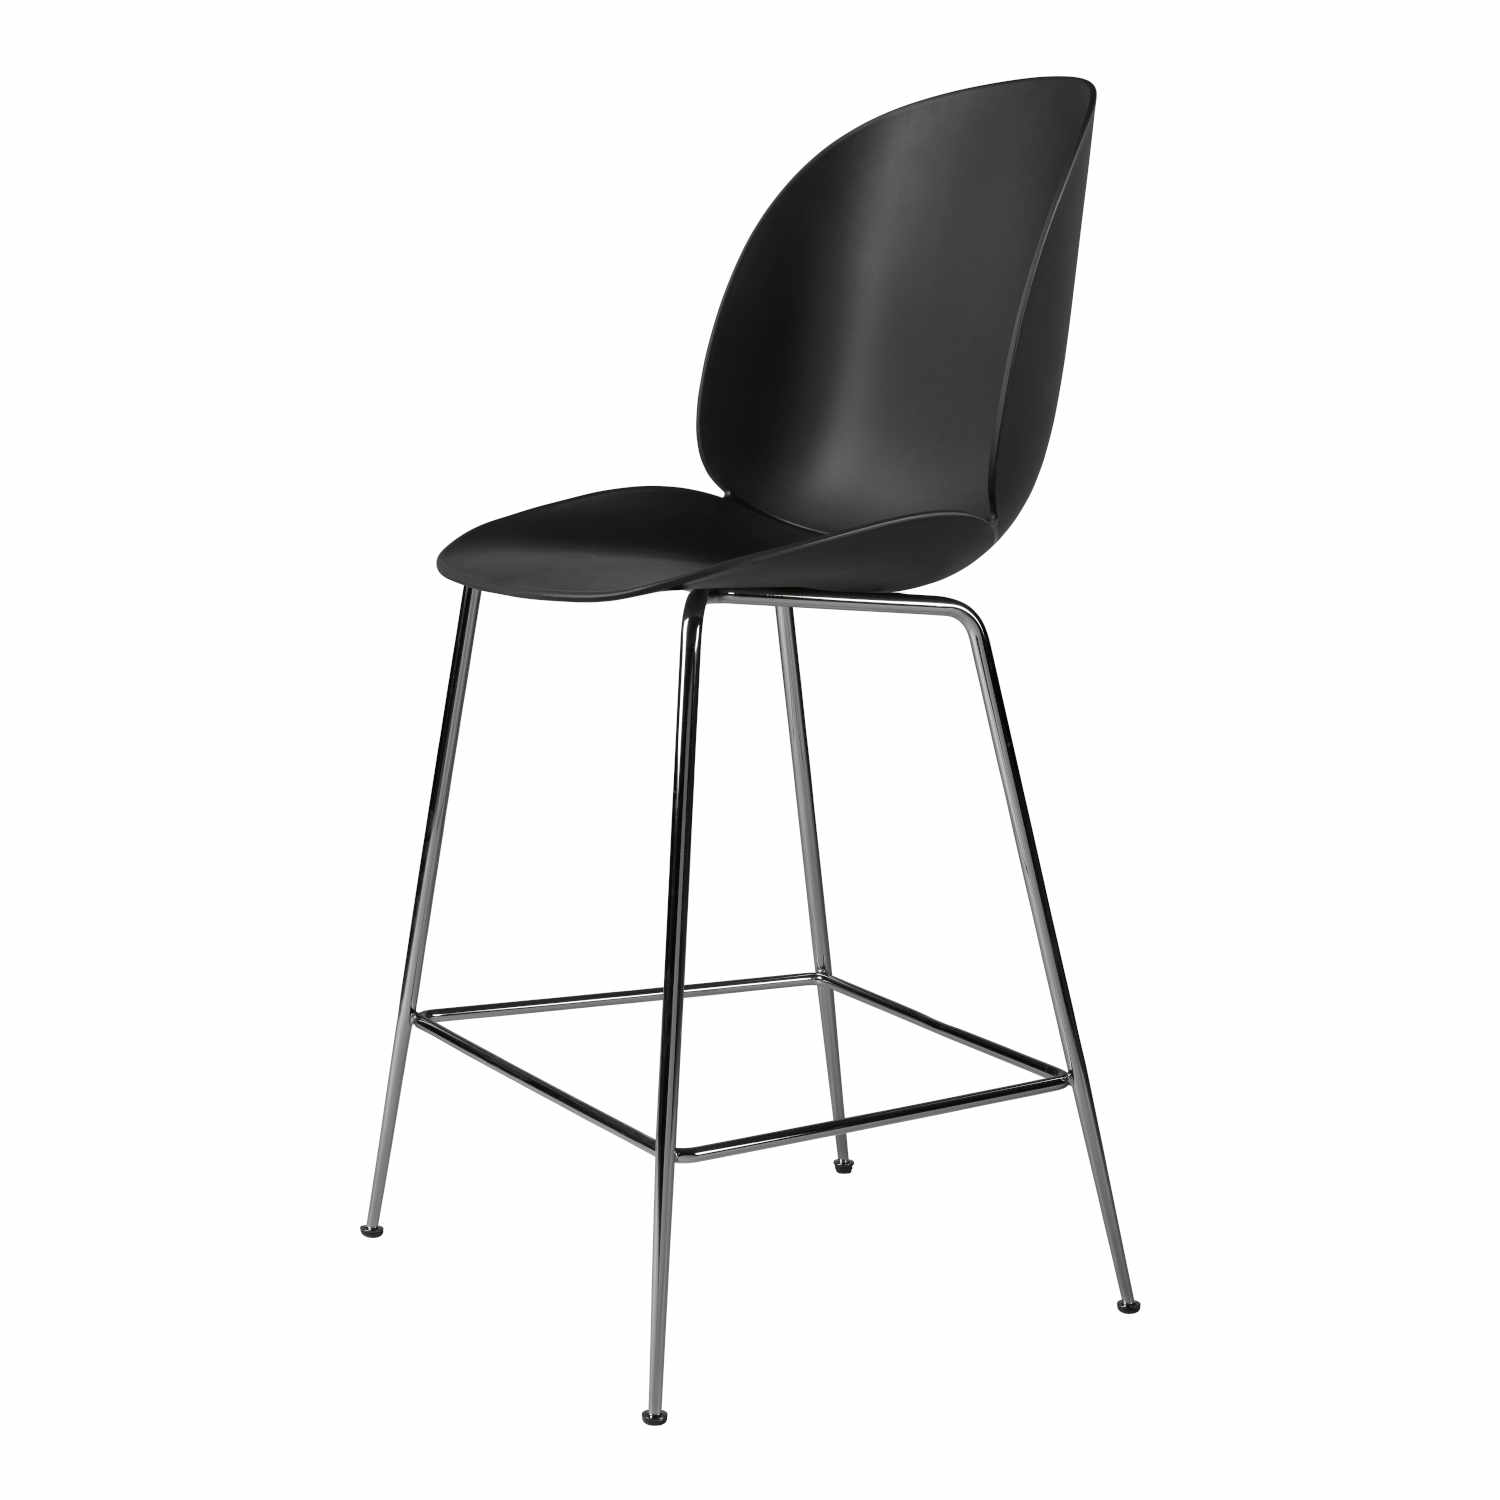 Beetle Counter Chair Conic Barhocker, Grösse sitzhöhe 63,5 cm, Sitzschale Plastic Shell black, Untergestell Conic Base antique brass von GUBI